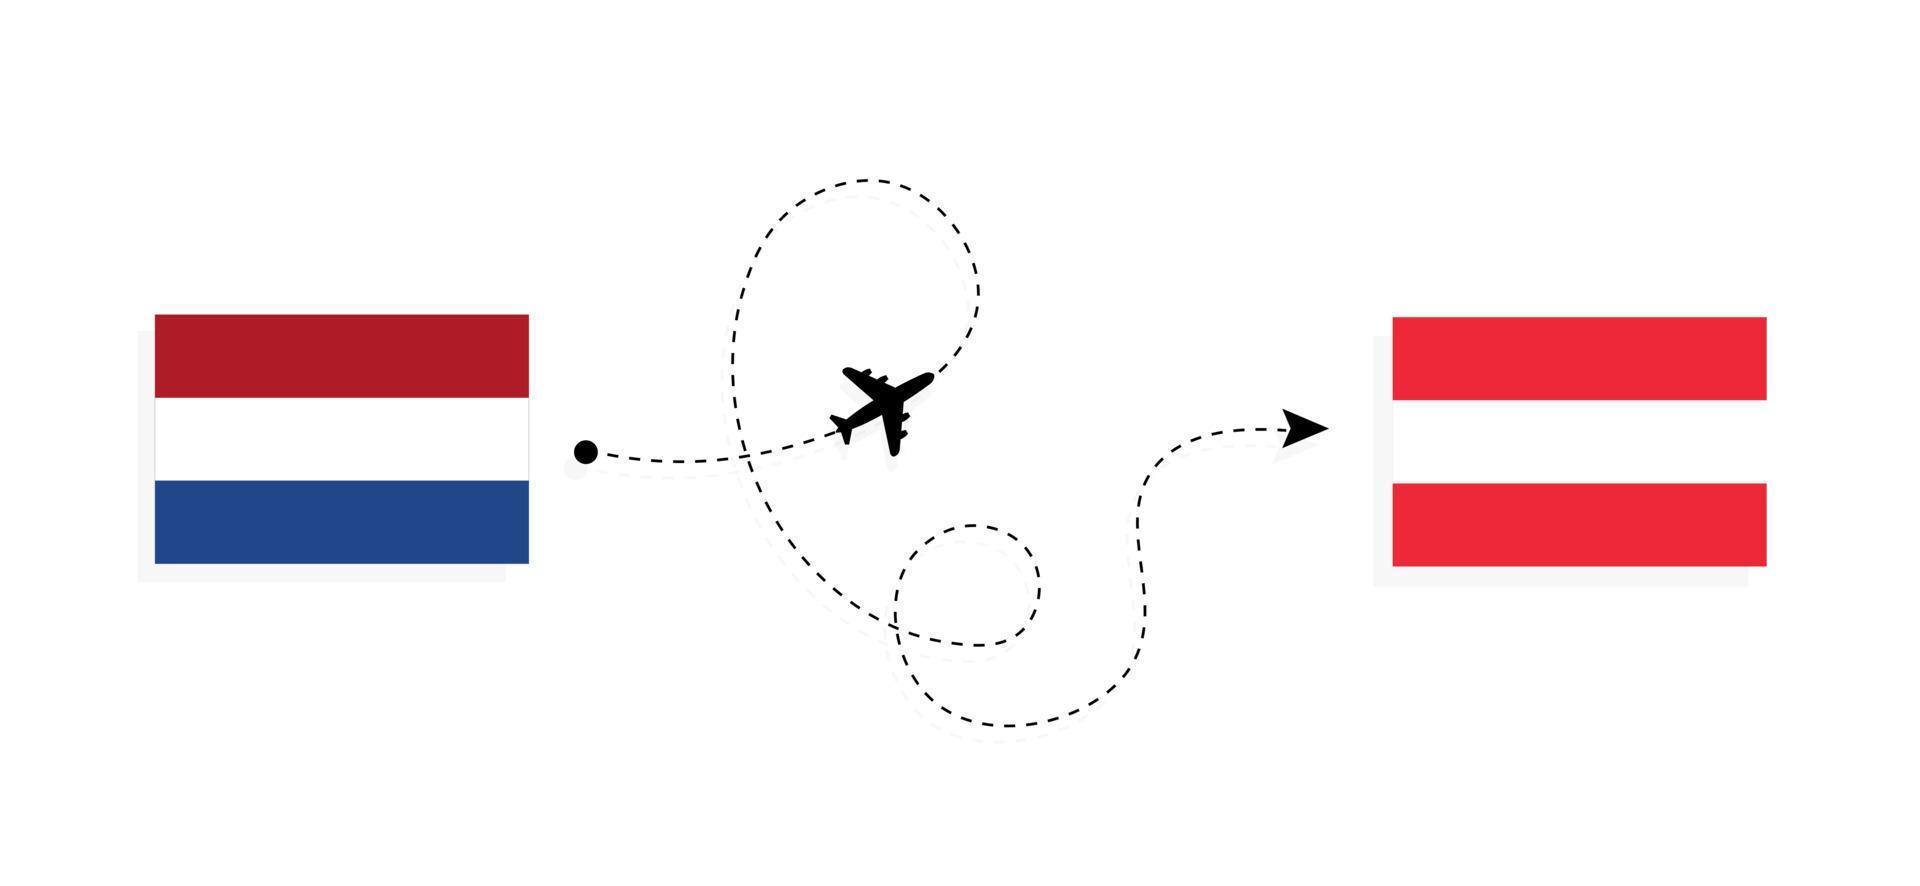 Vuelo y viaje desde Holanda a Austria en avión de pasajeros concepto de viaje vector